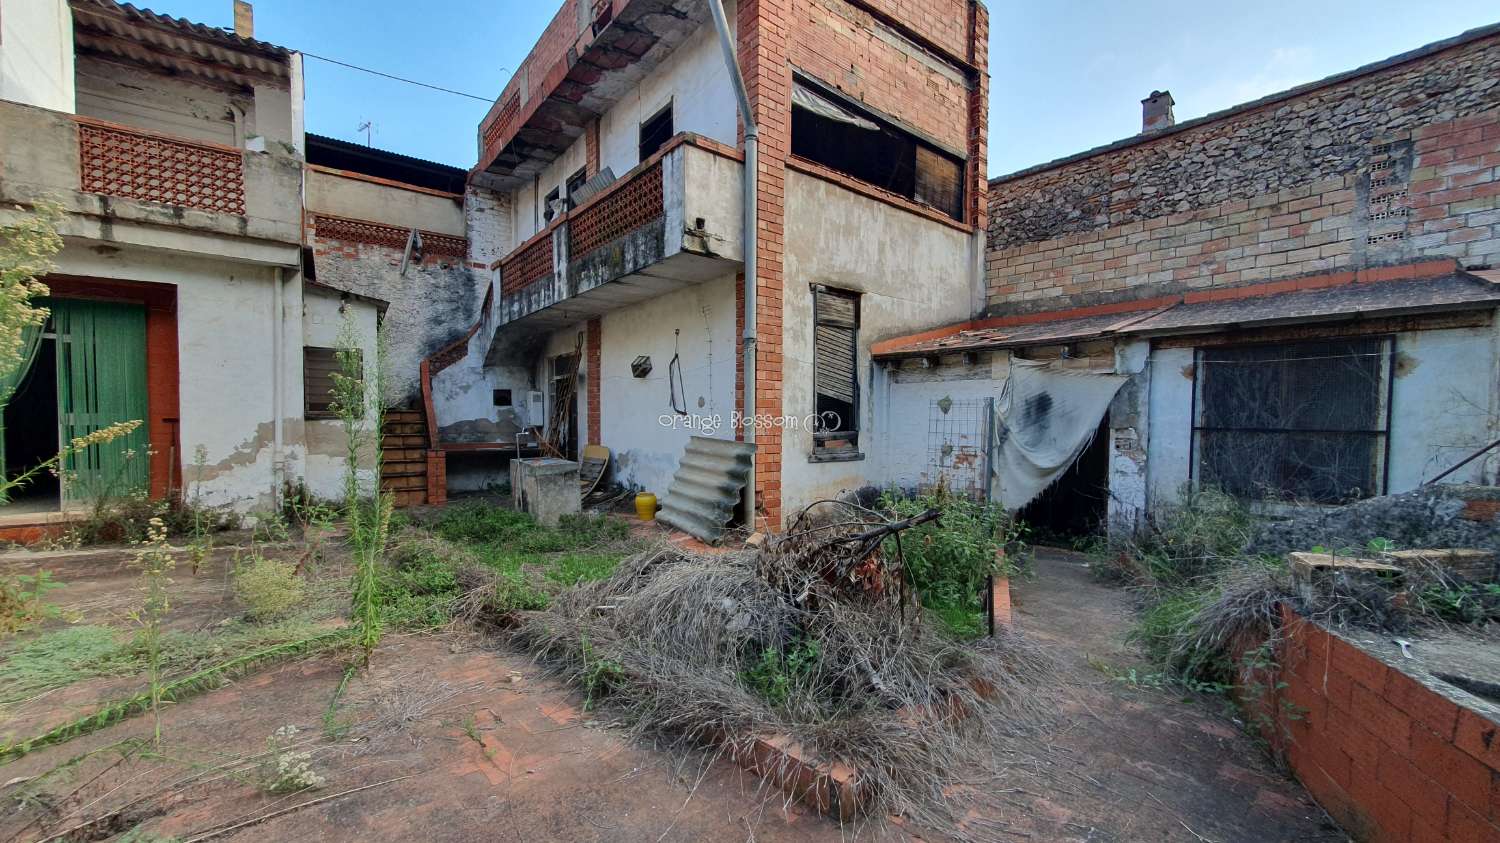 Apartament en venda in Villalonga